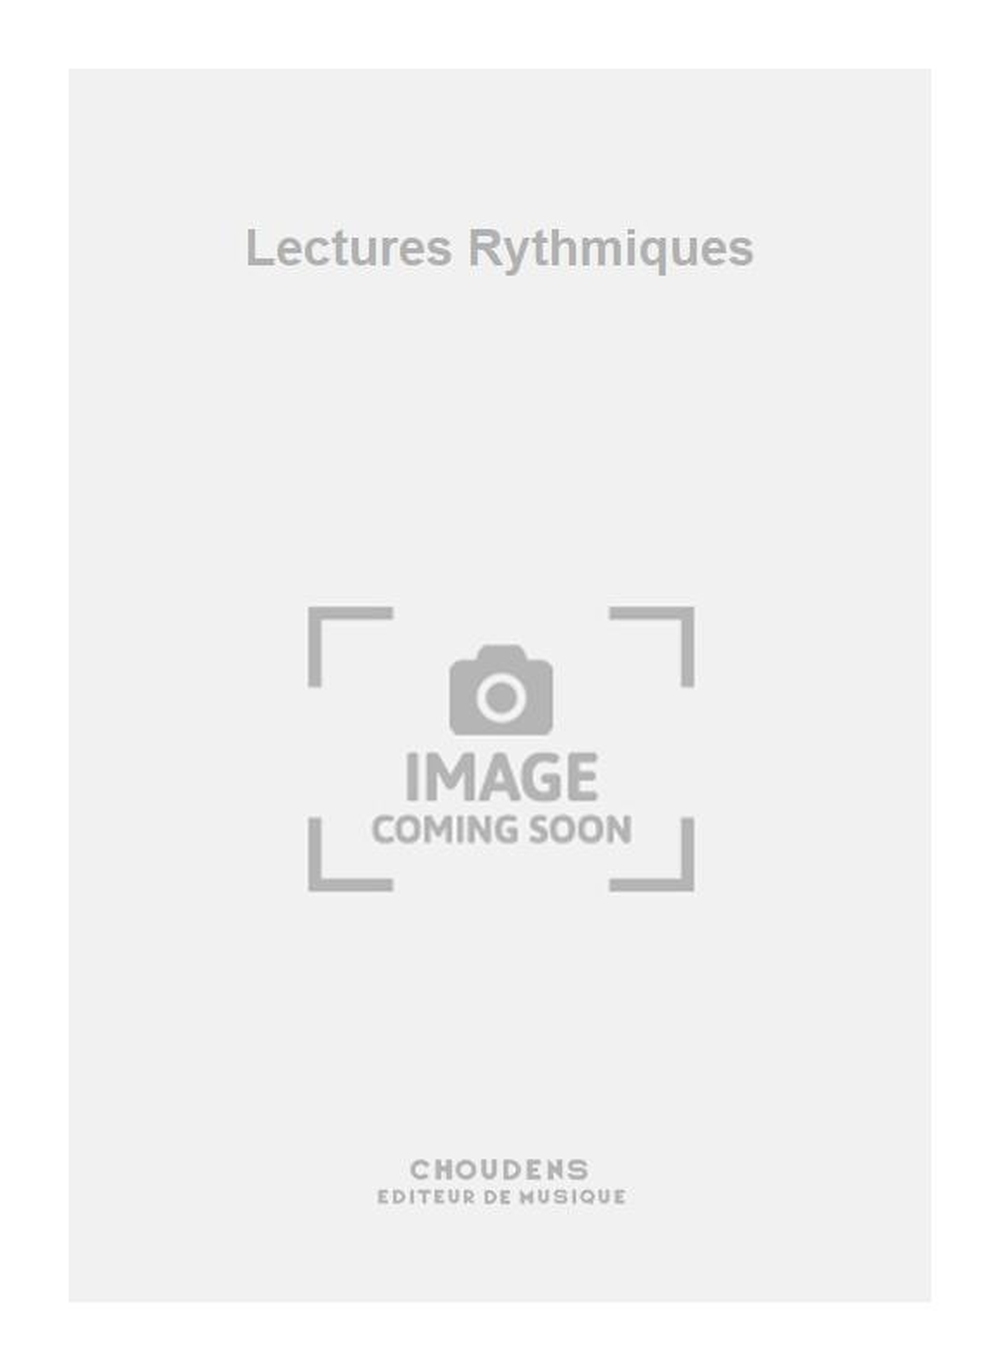 Soubeyran: Lectures Rythmiques